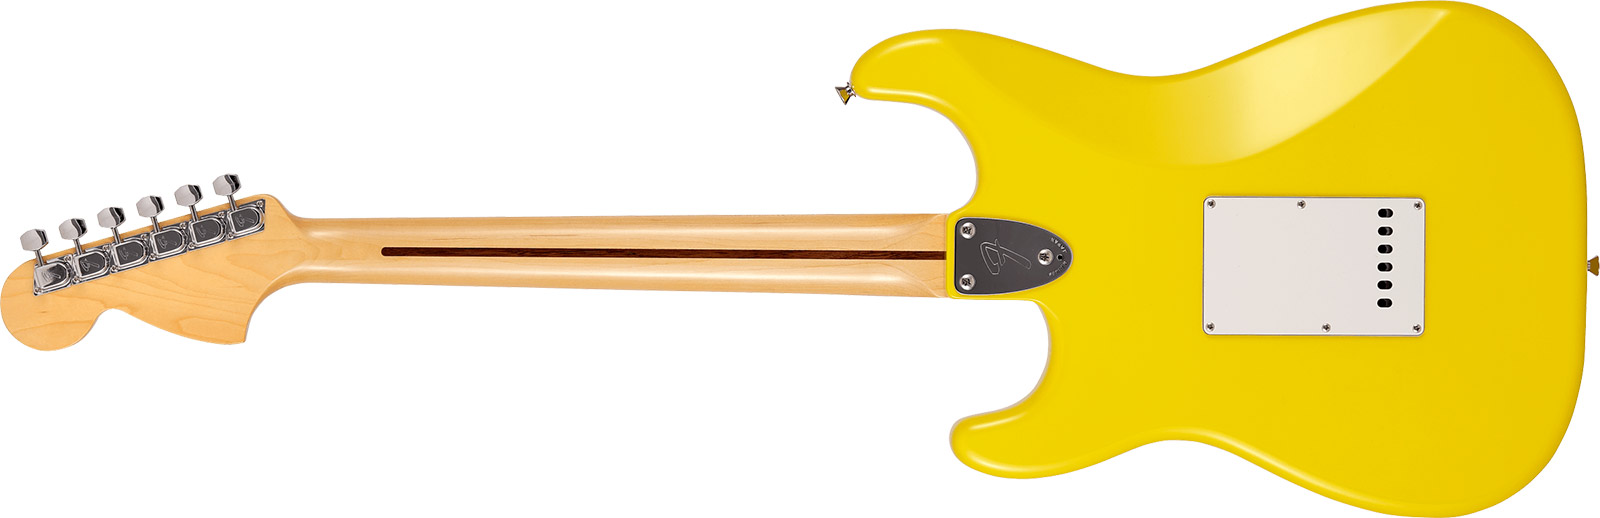 Fender Strat International Color Ltd Jap 3s Trem Mn - Monaco Yellow - Guitare Électrique Forme Str - Variation 1